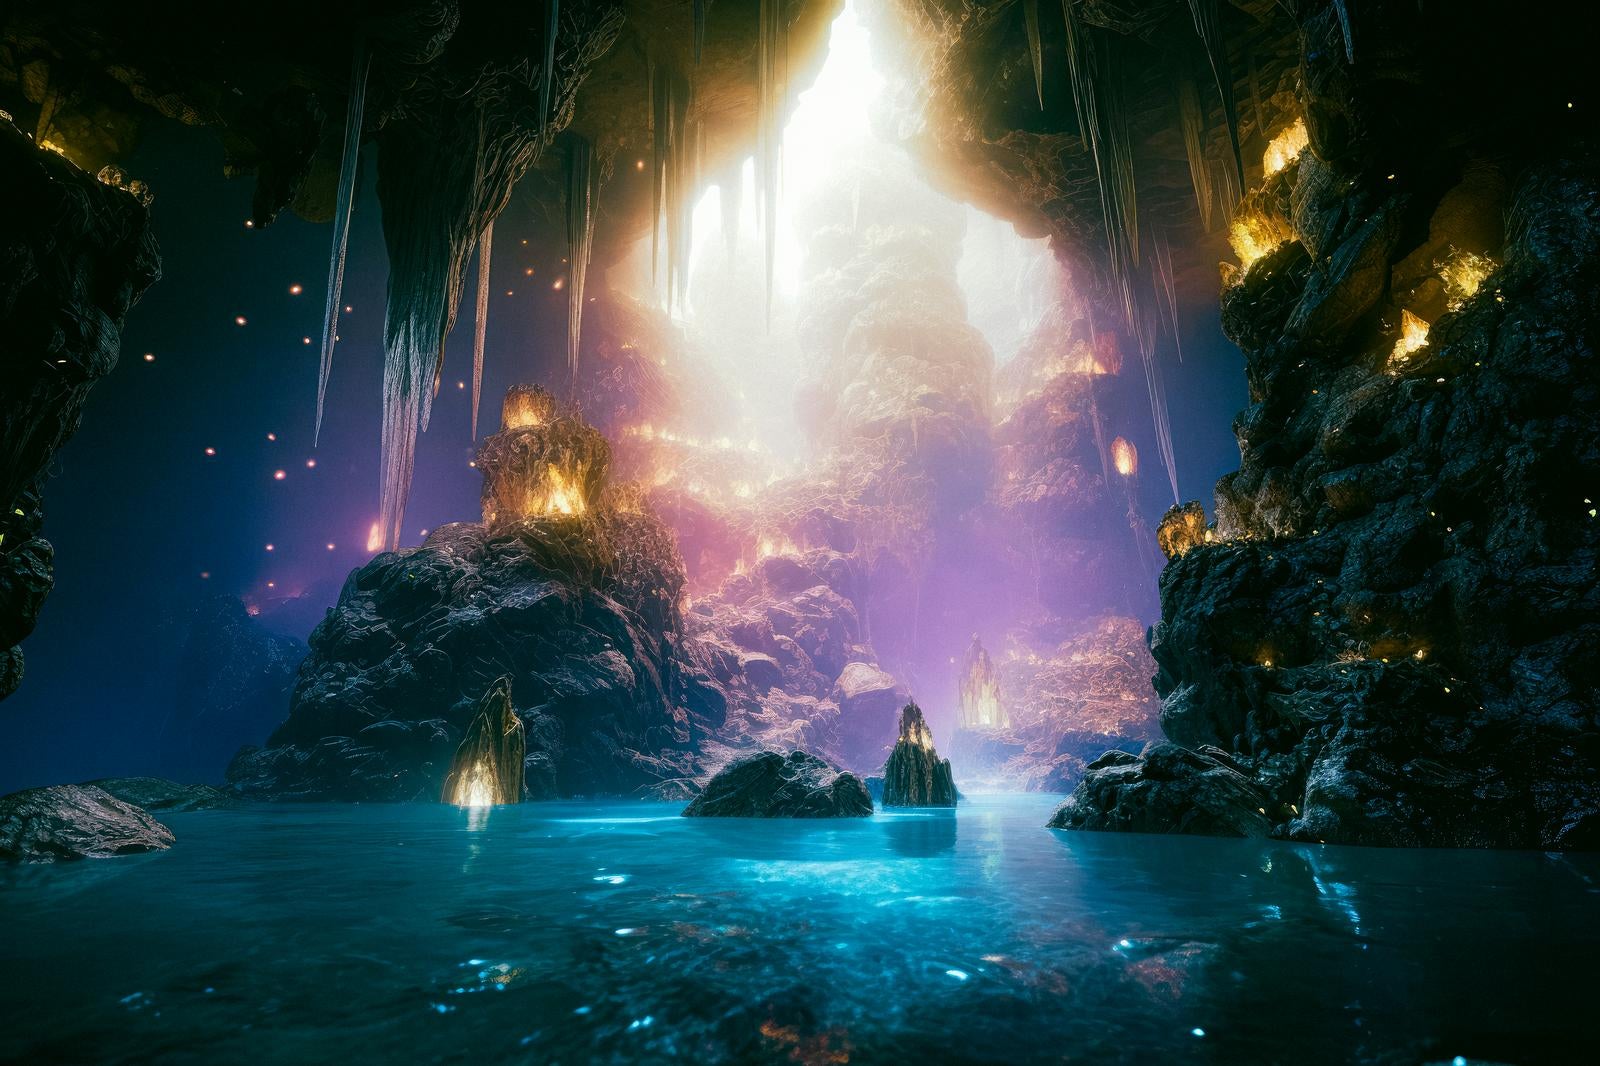 「地底の輝き、深い洞窟の奥地と青白い水源」の写真